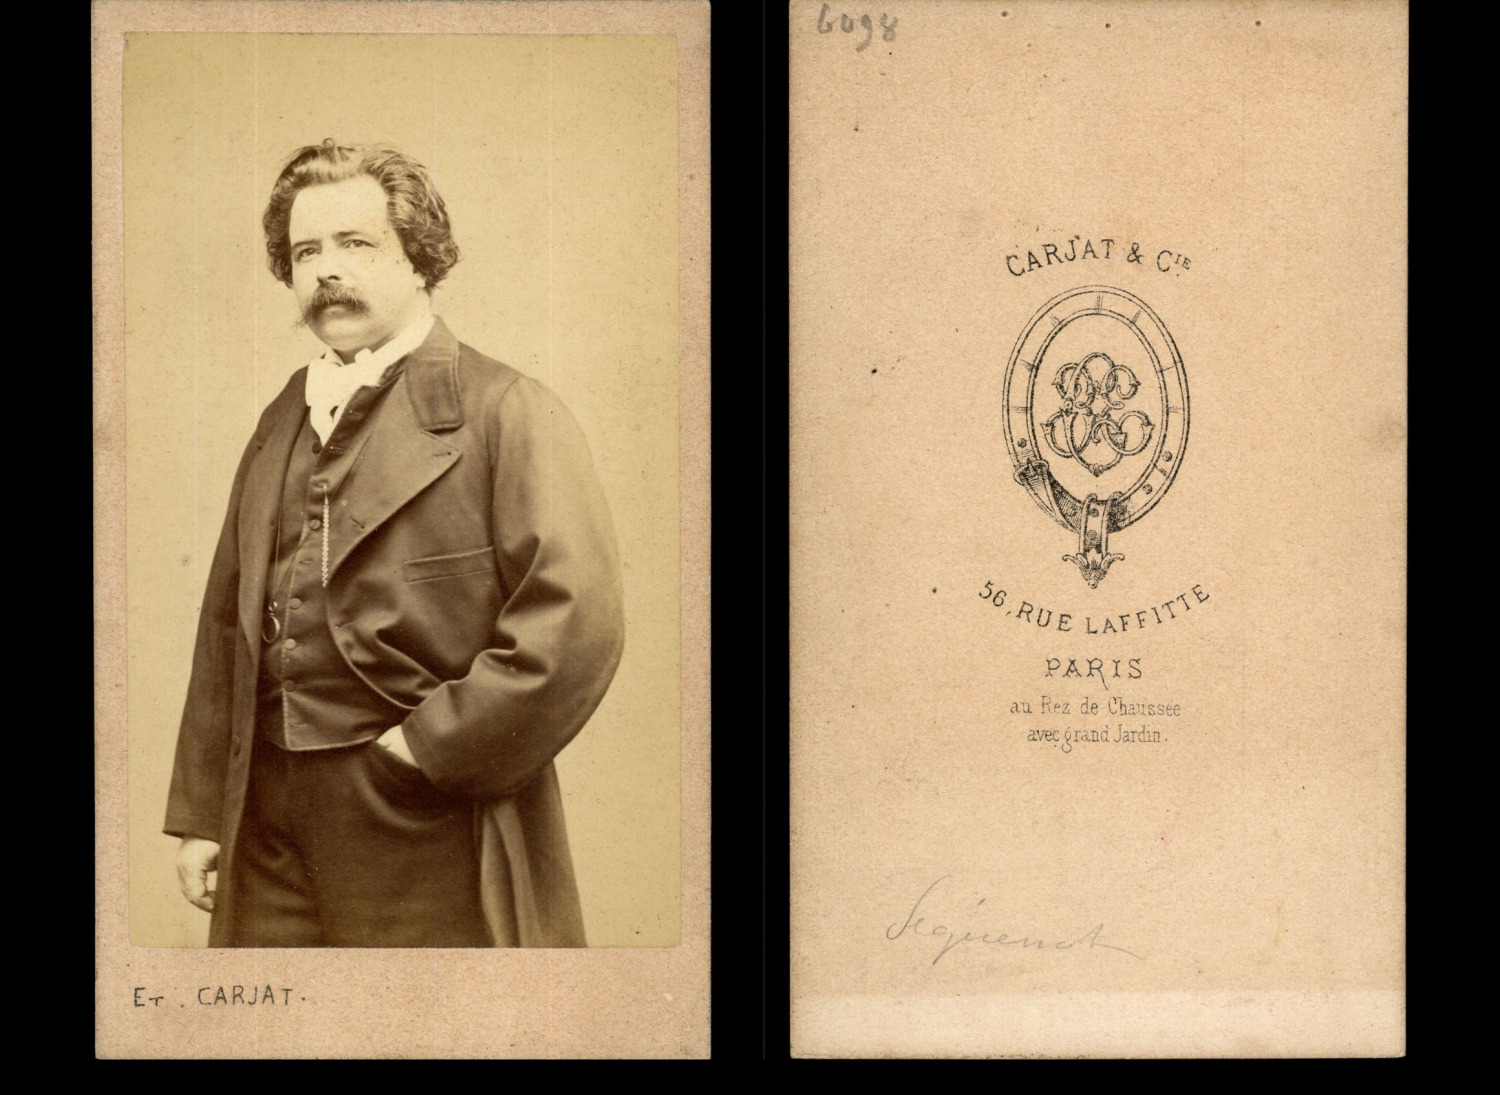 Carjat, Paris, Auguste Péquégnot, vintage painter albumen print CDV.Auguste Pé